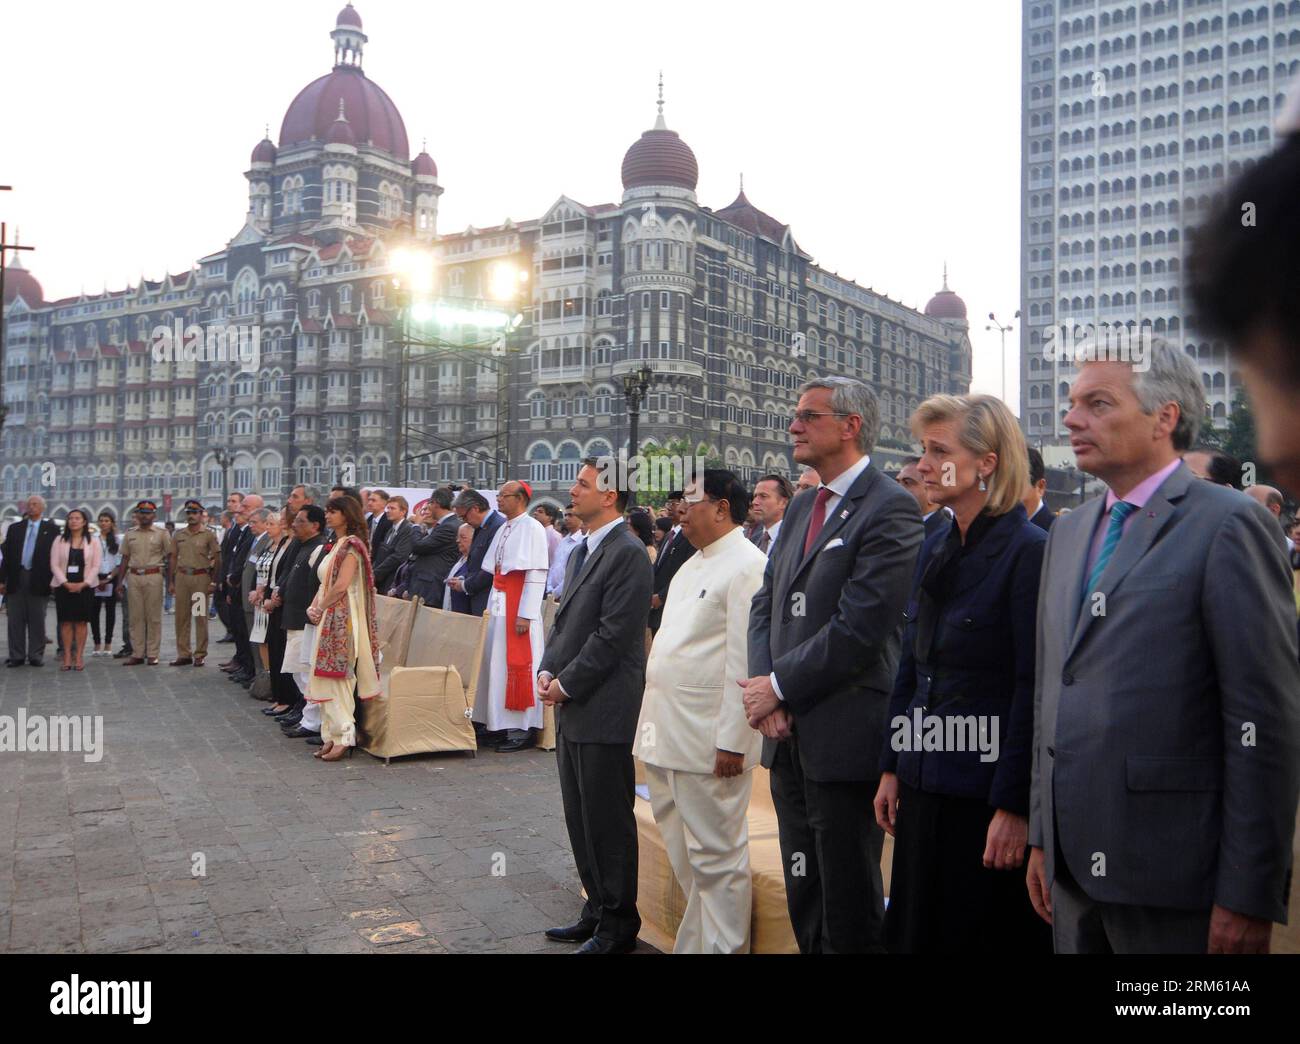 Bildnummer : 60761109 Datum : 26.11.2013 Copyright : imago/Xinhua MUMBAI, 26 nov. 2013 (Xinhua) -- la Princesse Astrid (2e R) et le Vice-Premier ministre Didier Reynders (1e R) participent à un événement commémorant le cinquième anniversaire de l'attentat terroriste de Mumbai en 26/11 à Mumbai, en Inde, le 26 novembre 2013. (Xinhua/Stringer)(zhf) INDIA-MUMBAI-BELGIUM-PRINCESS ASTRID-VISIT PUBLICATIONxNOTxINxCHN Entertainment People Adel x0x xkg 2013 quer premiumd Banque D'Images